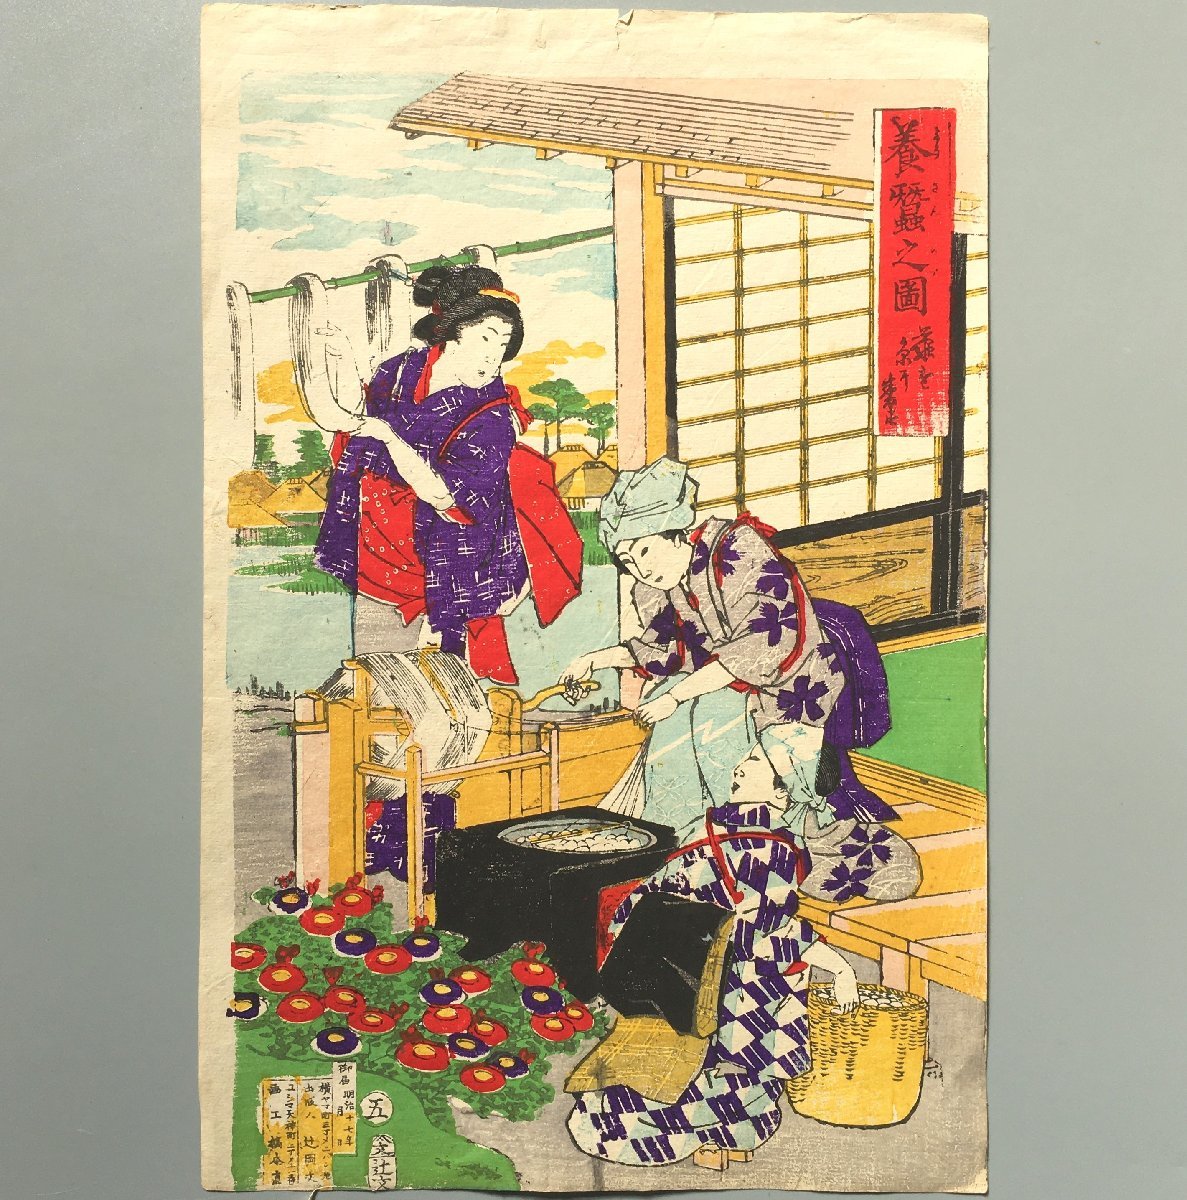 하시모토 나오요시, 양잠의 그림 5: 누에고치에서 실 뽑기, 1884, 진본인, 양잠, 실크 직조, 목판화, 우키요에, 그림, 우키요에, 인쇄물, 다른 사람